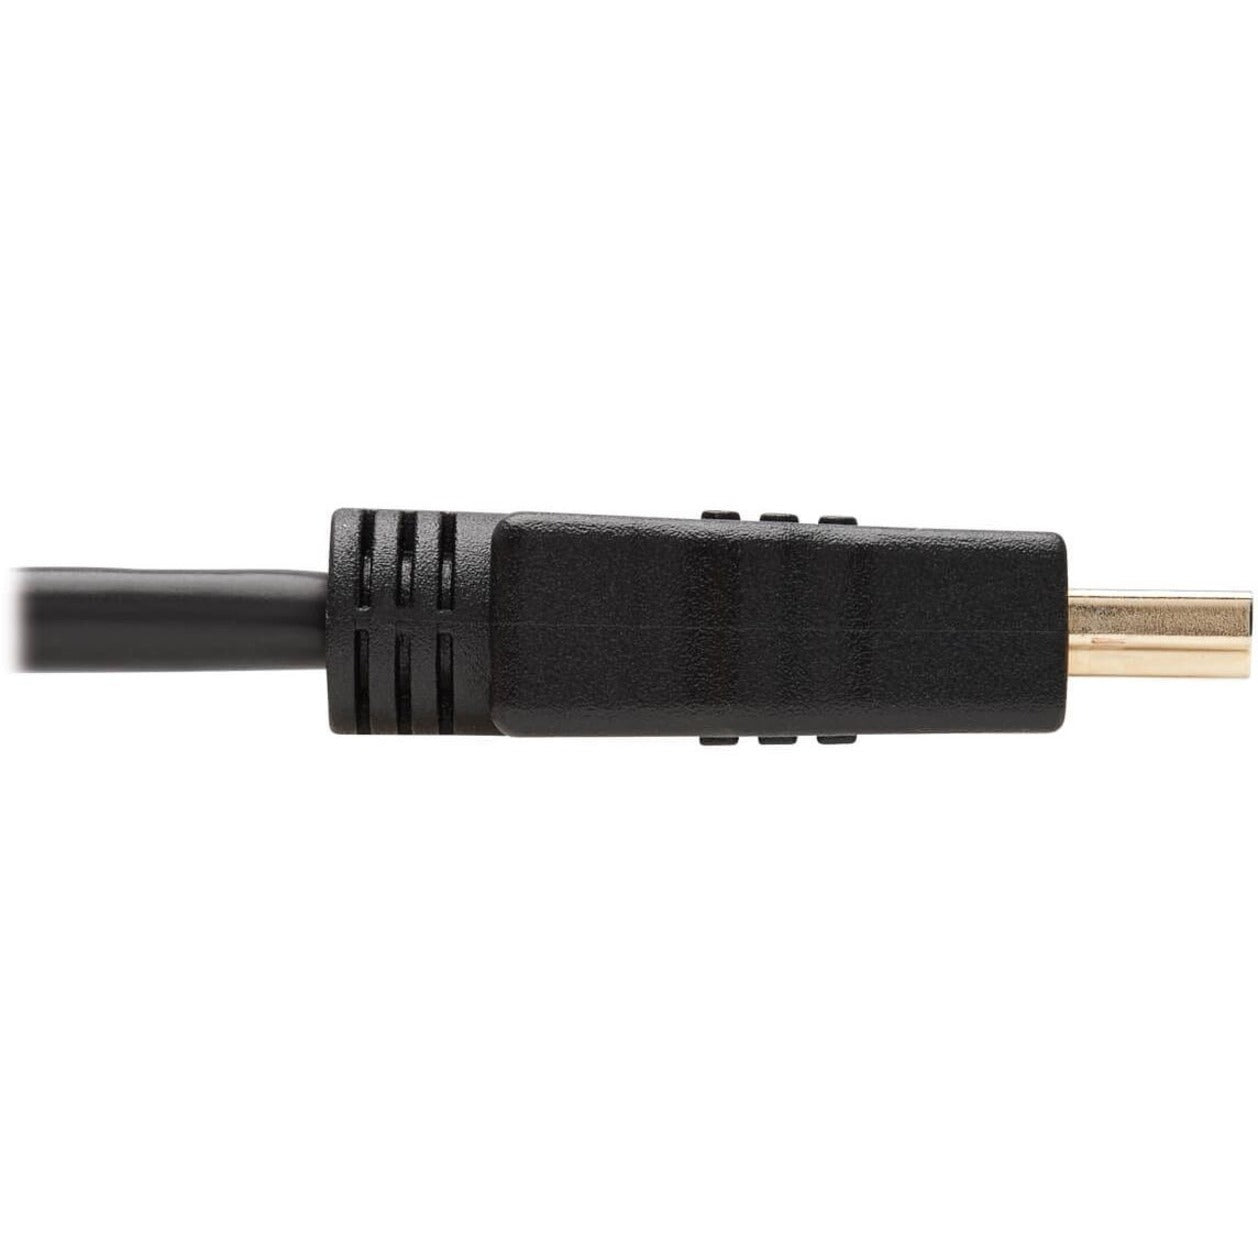 تريب لايت كابل HDMI للصوت والفيديو عالي السرعة P568-006 ، 6 قدم ، أسود